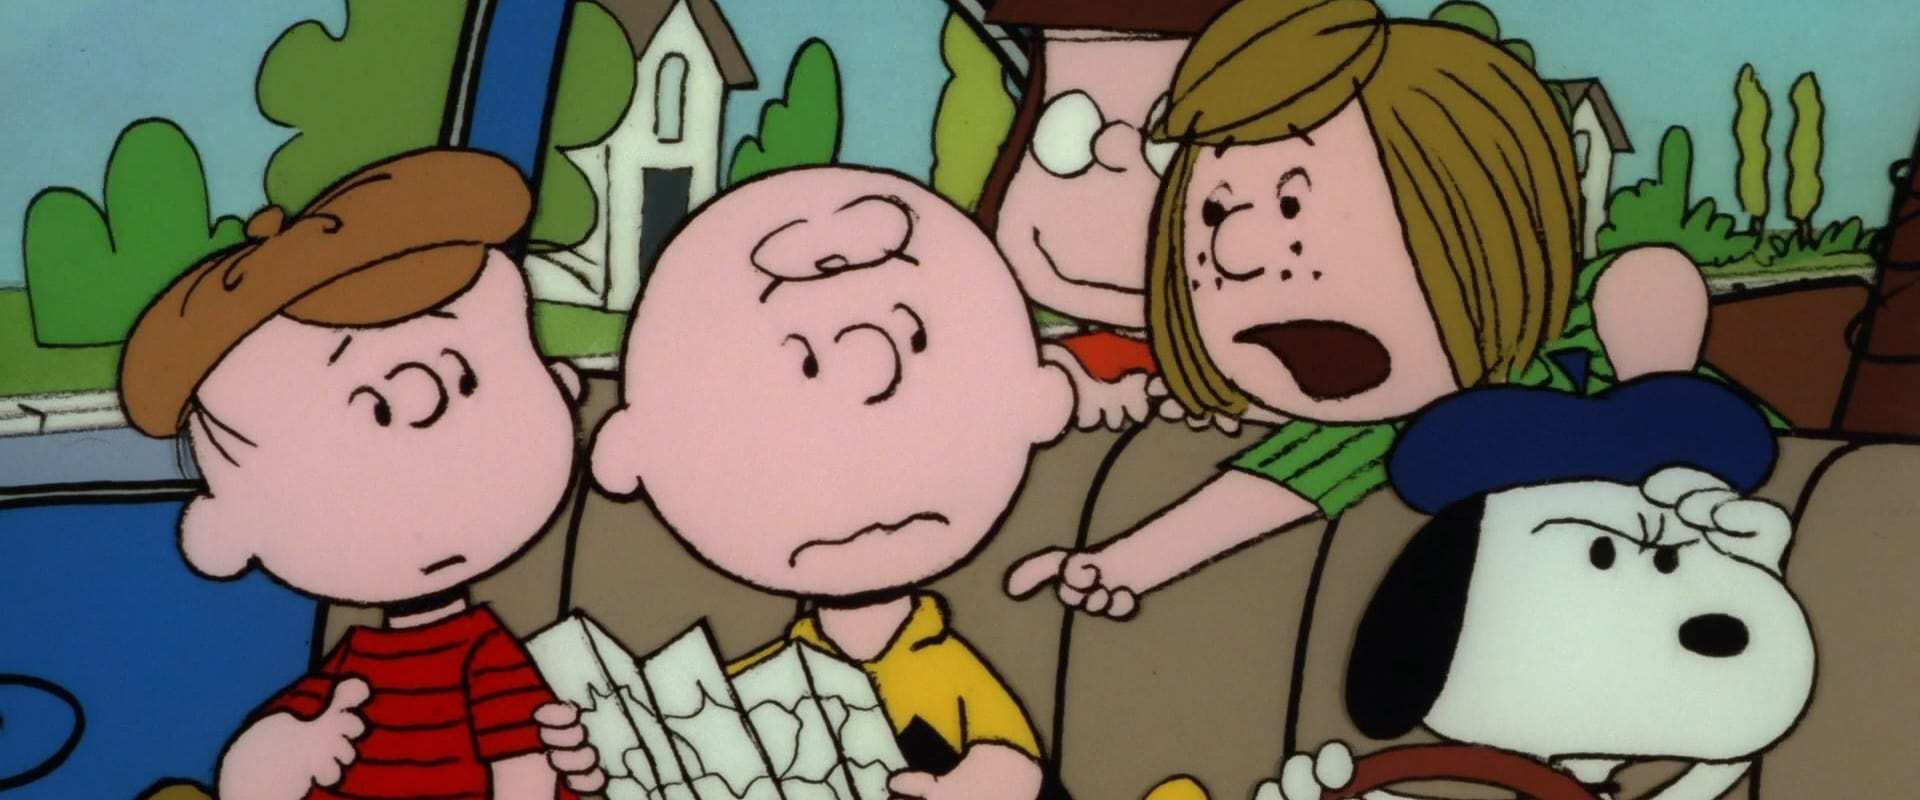 Buon viaggio, Charlie Brown (...e non tornare indietro!!)